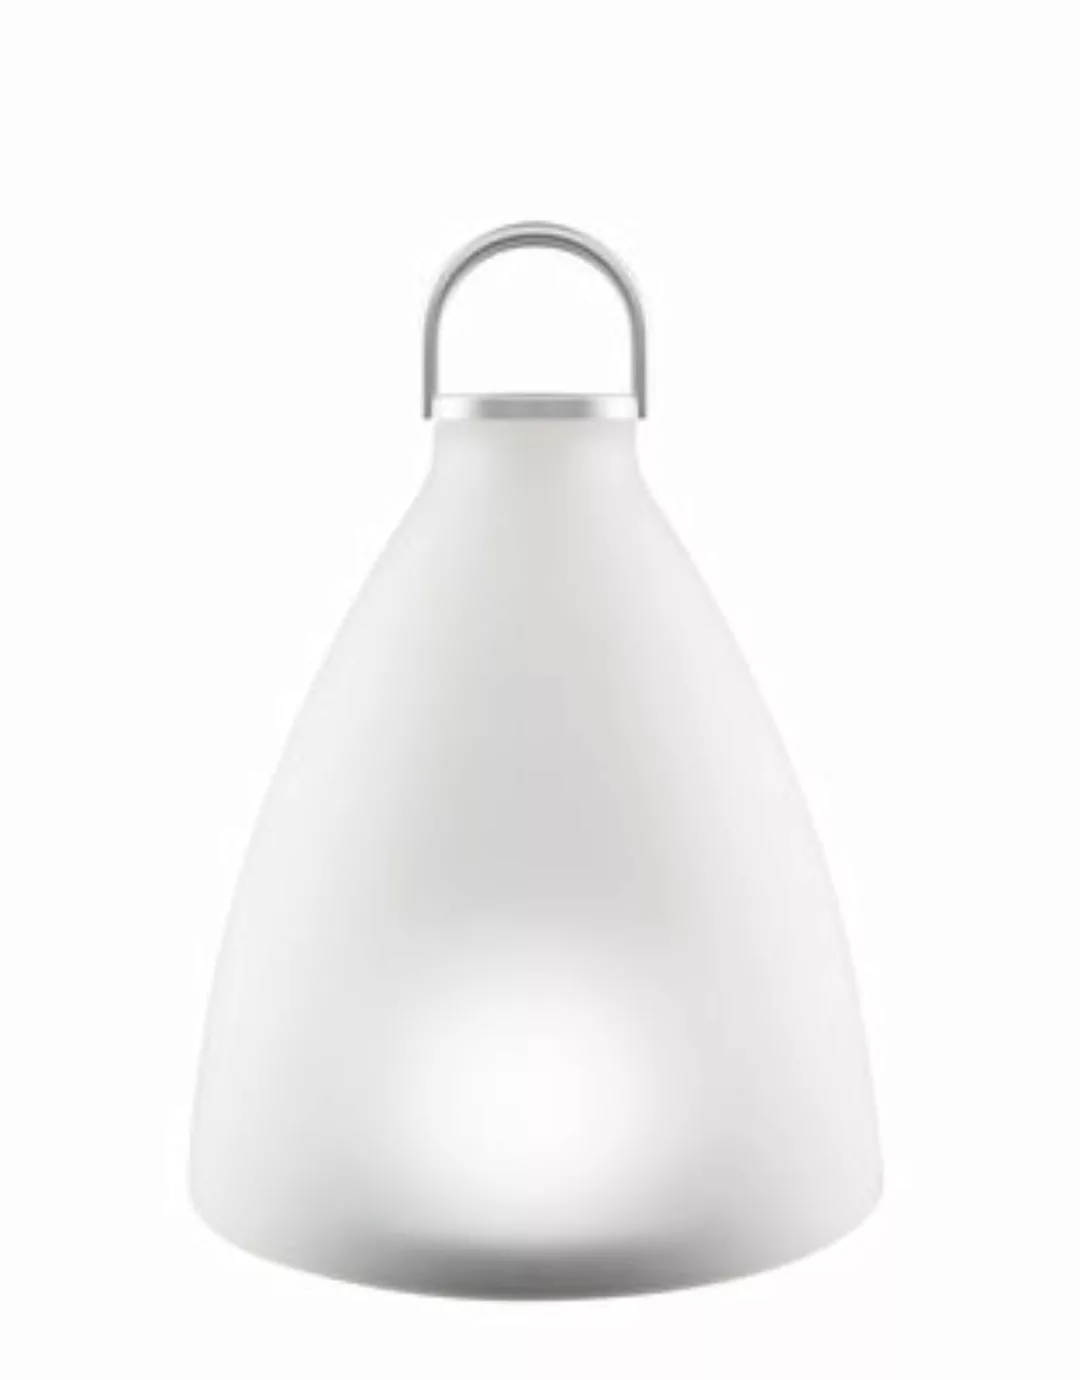 Outdoor-Solarlampe Sunlight Bell Small glas weiß / LED - kabellos - Glas - günstig online kaufen